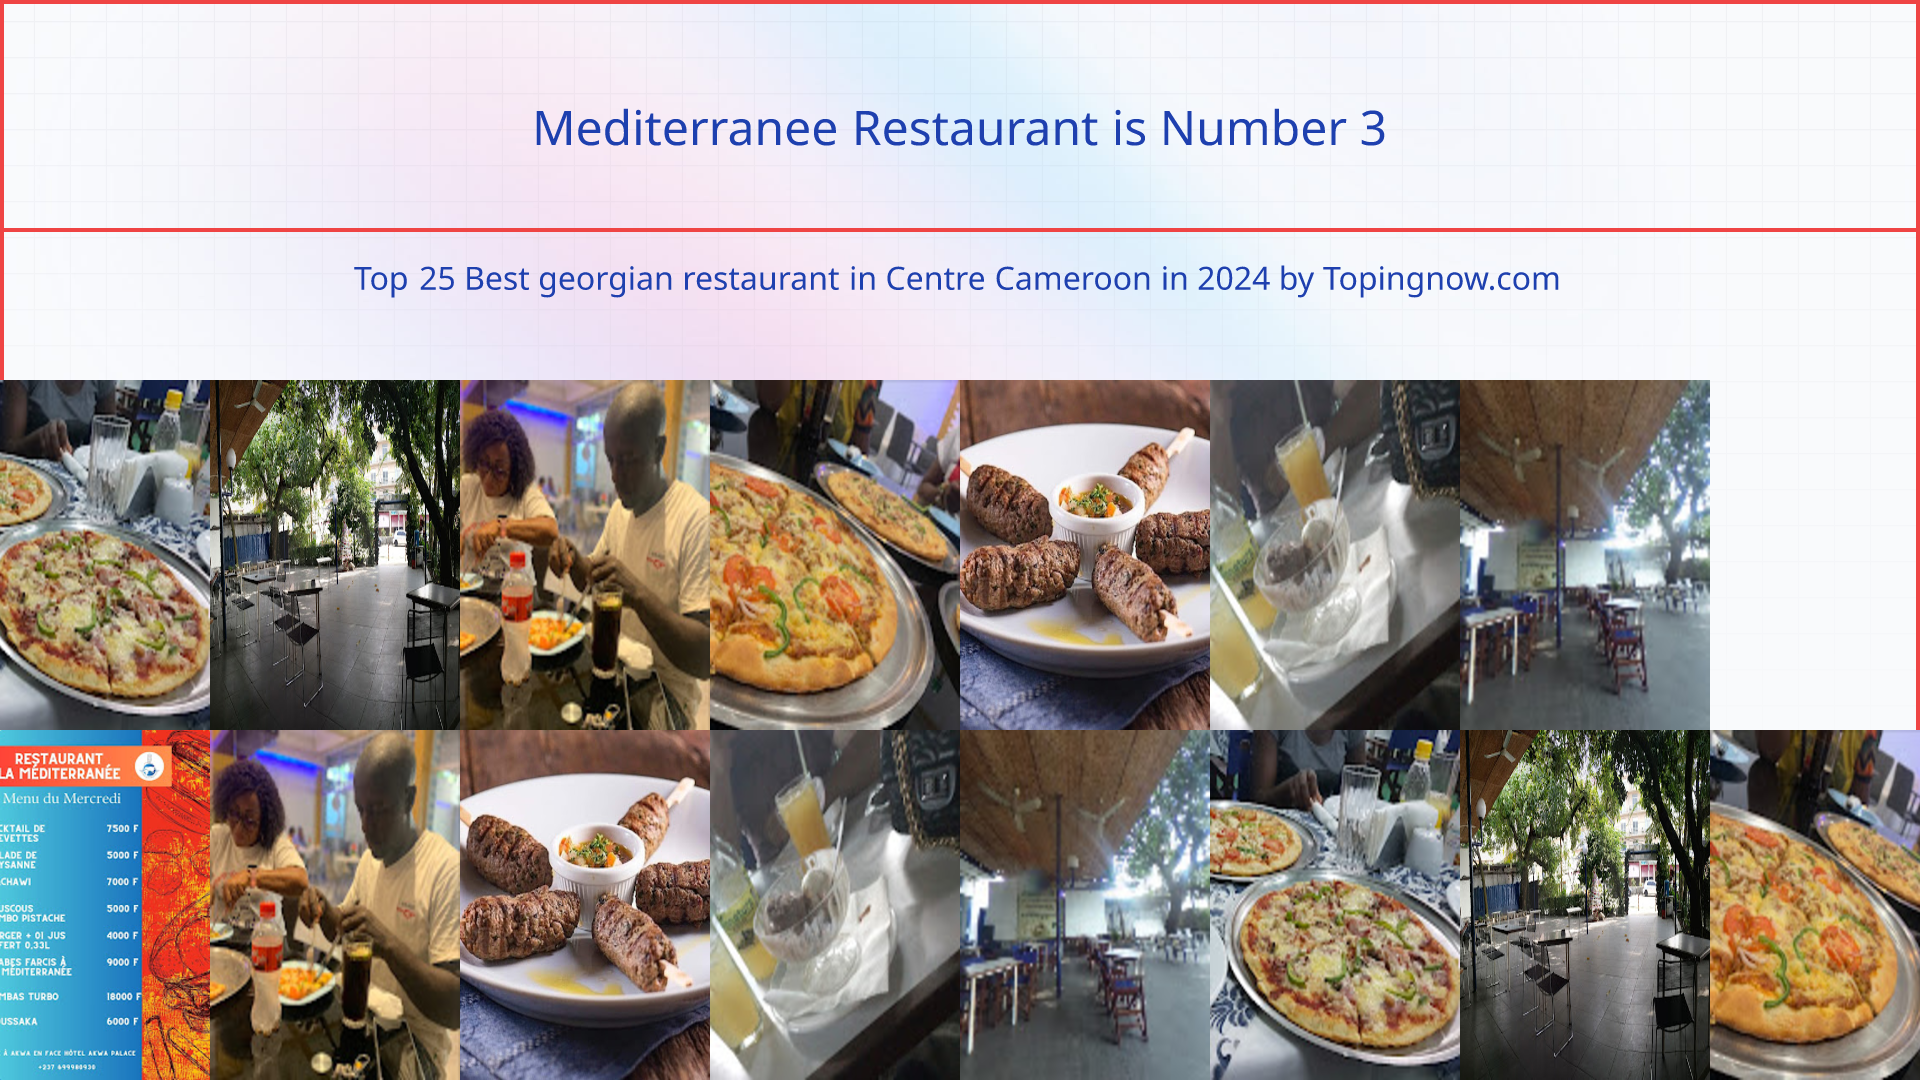 Mediterranee Restaurant: Top 25 Best georgian restaurant in Centre Cameroon in 2024